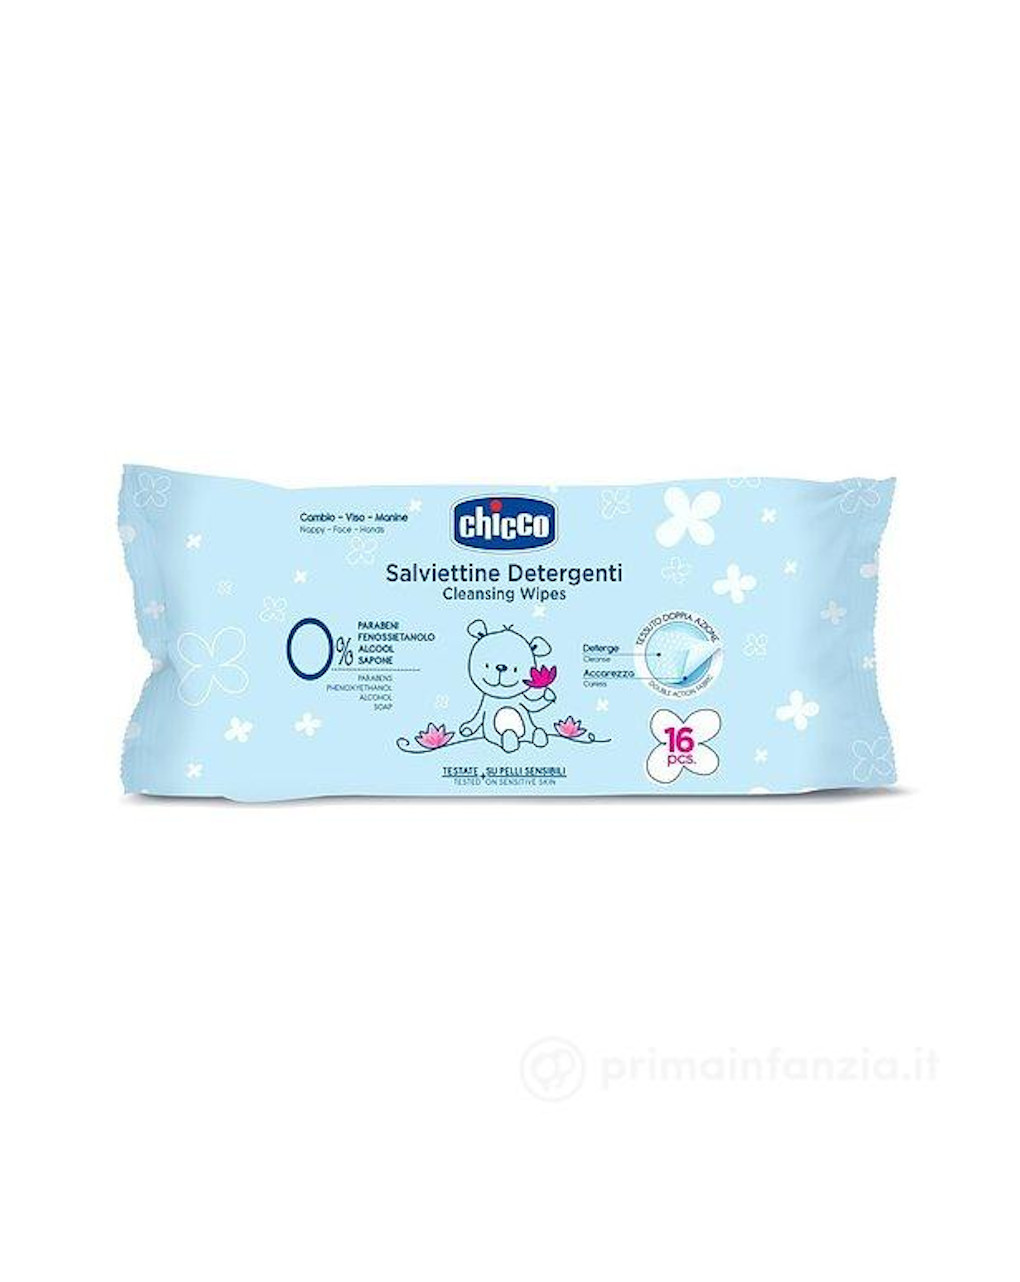 Salviettine detergenti natural sensation 16 pz - Chicco